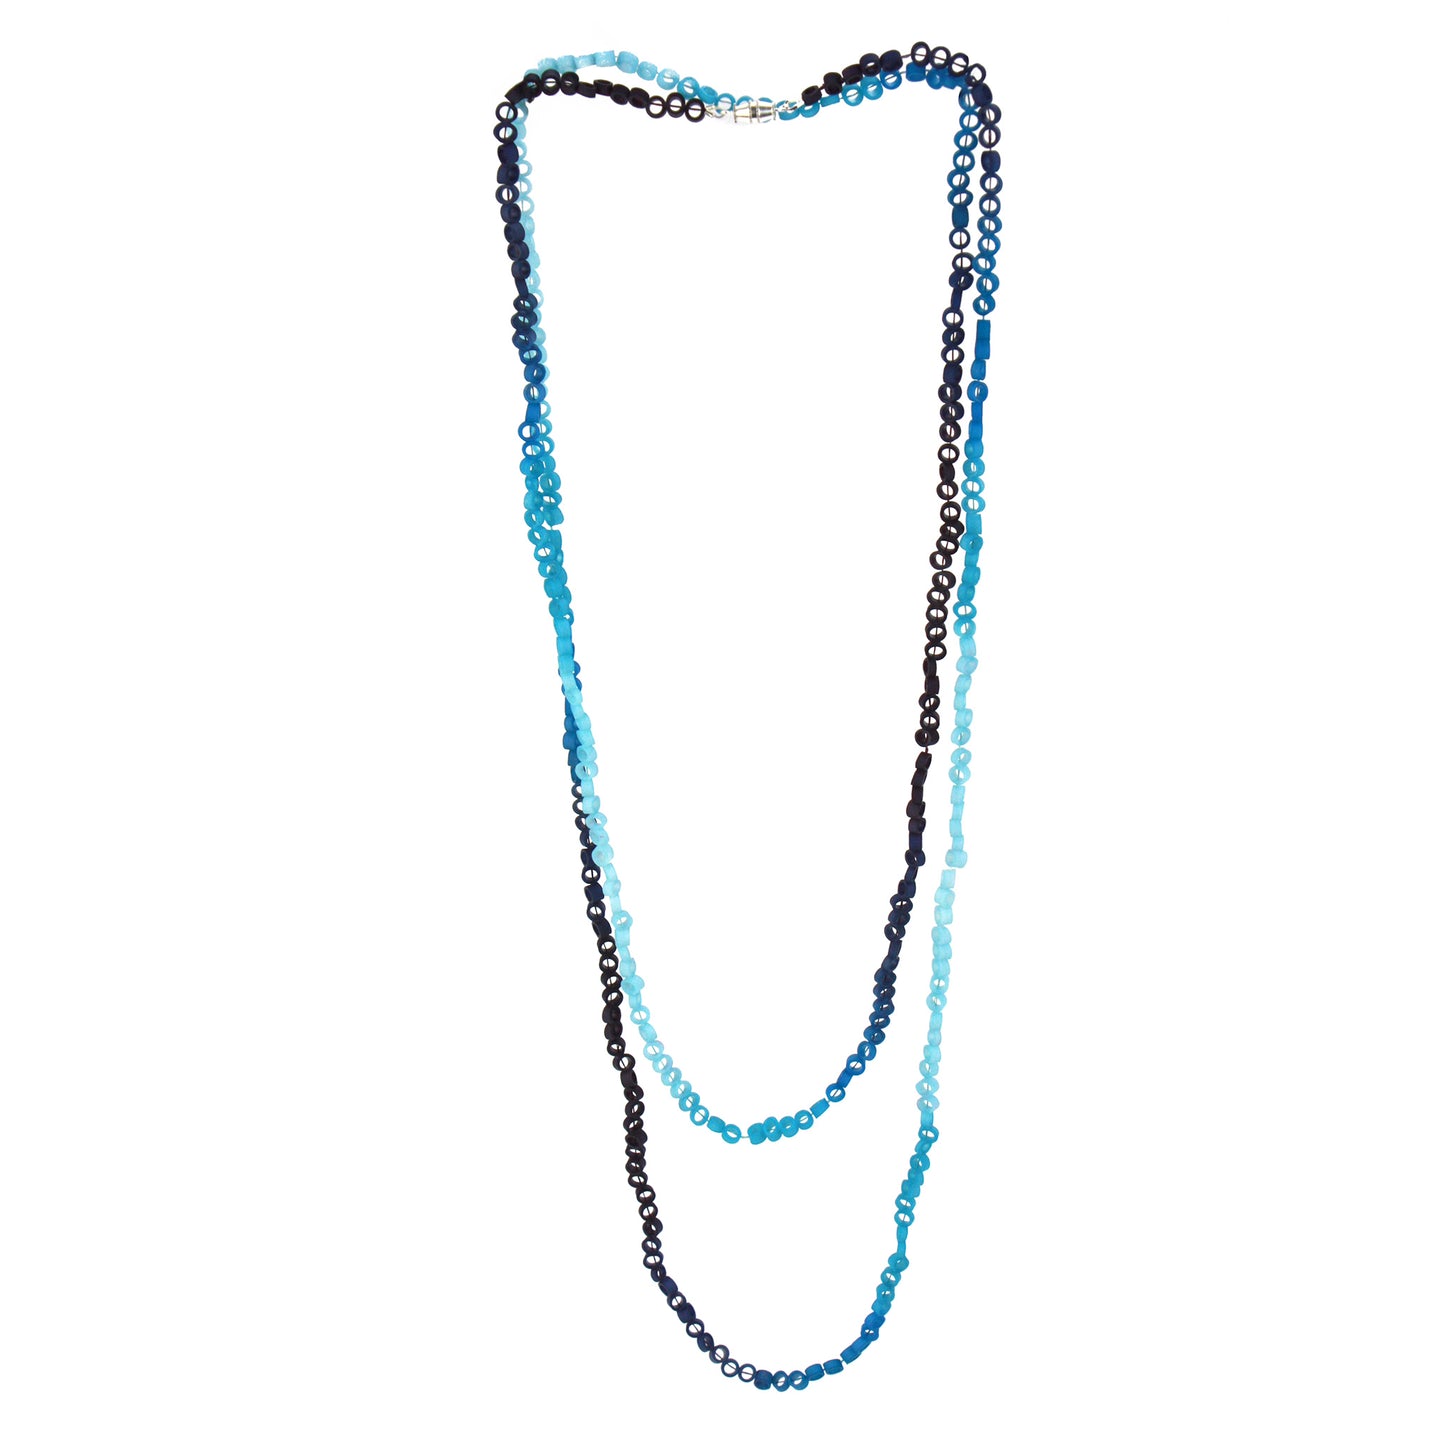 Little links necklace - Blues